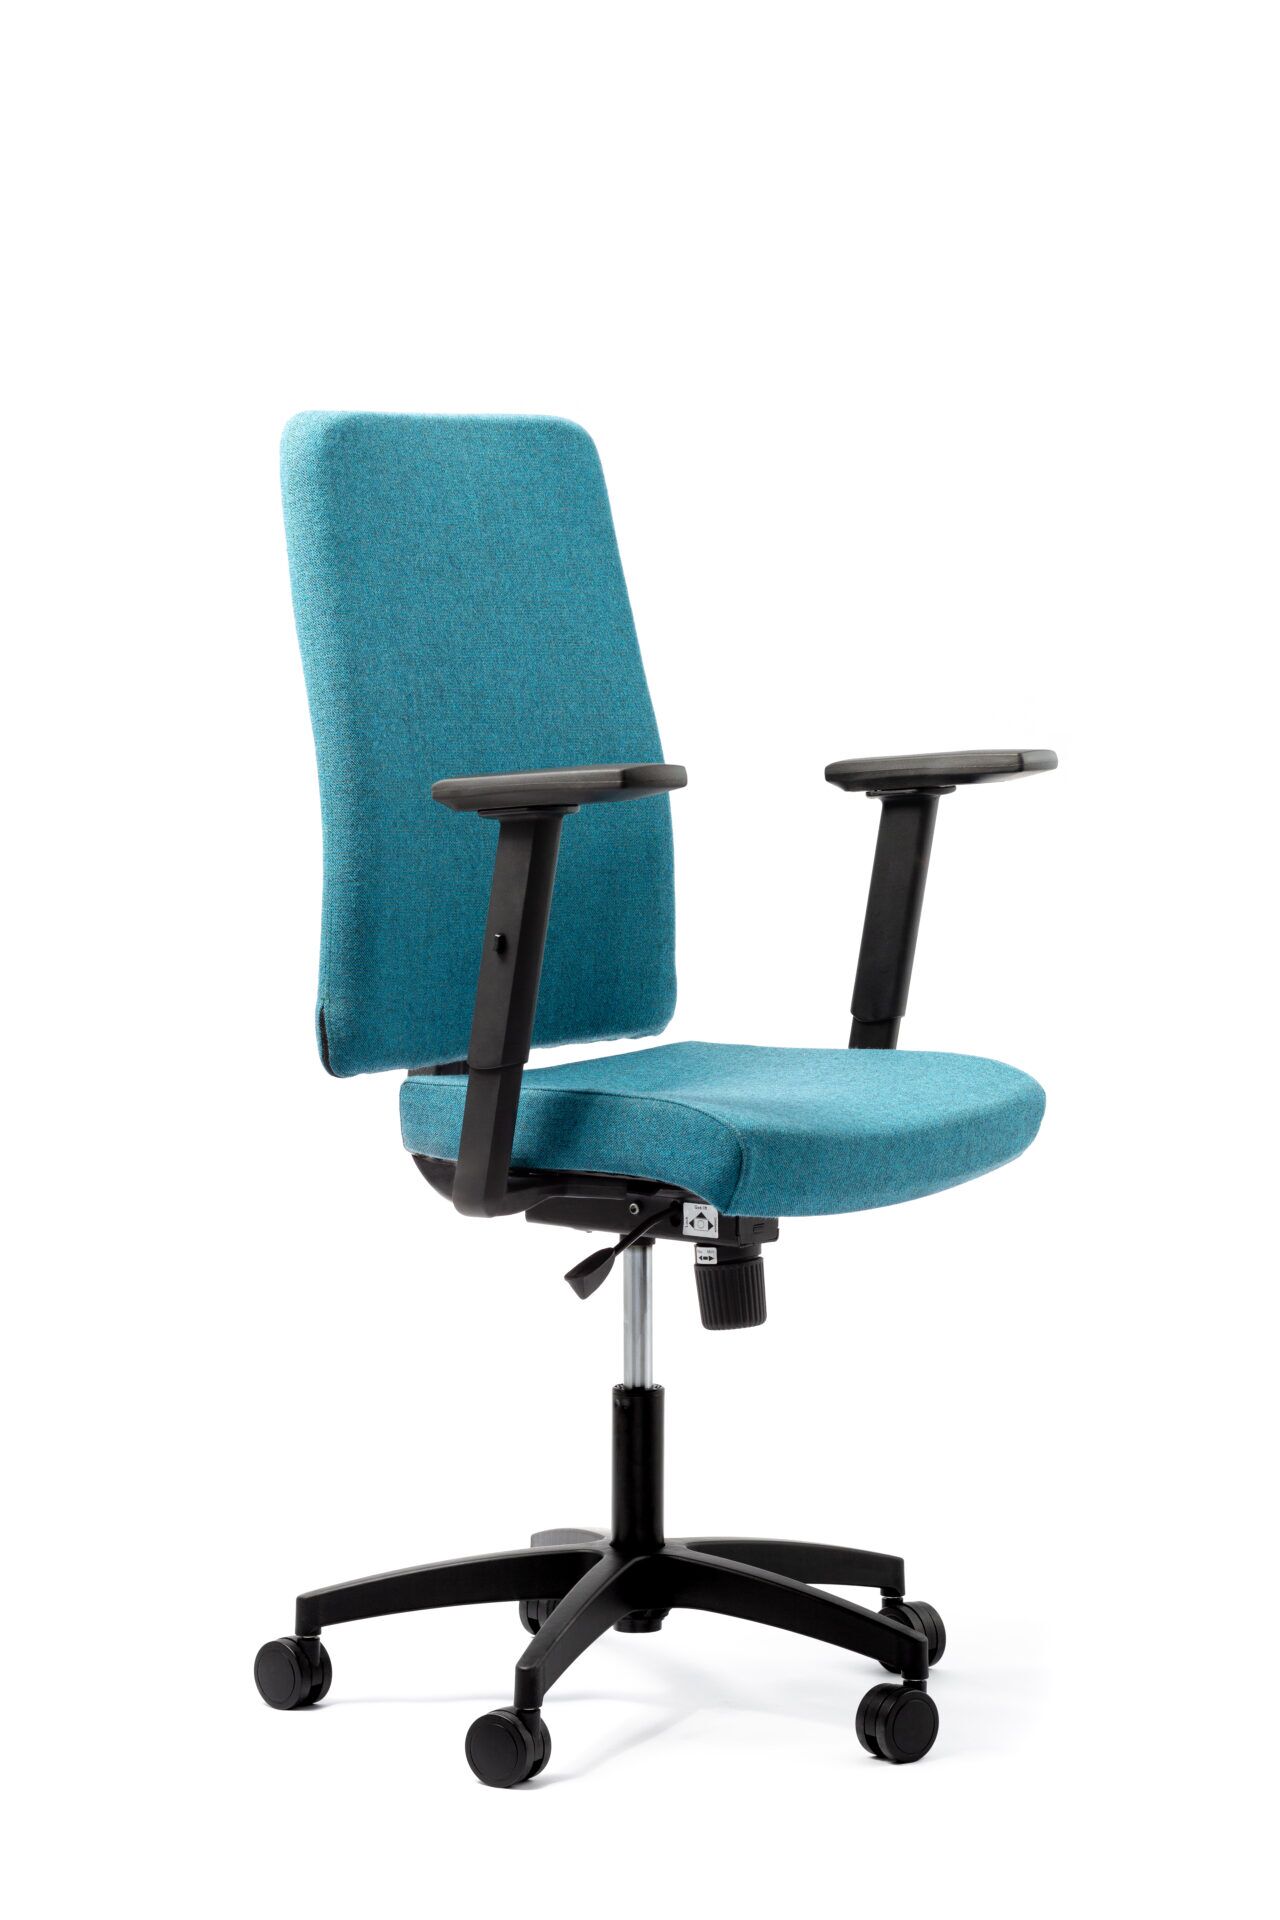 Niebieski fotel biurowy - widoczny po skosie od przodu zdjęcie 6